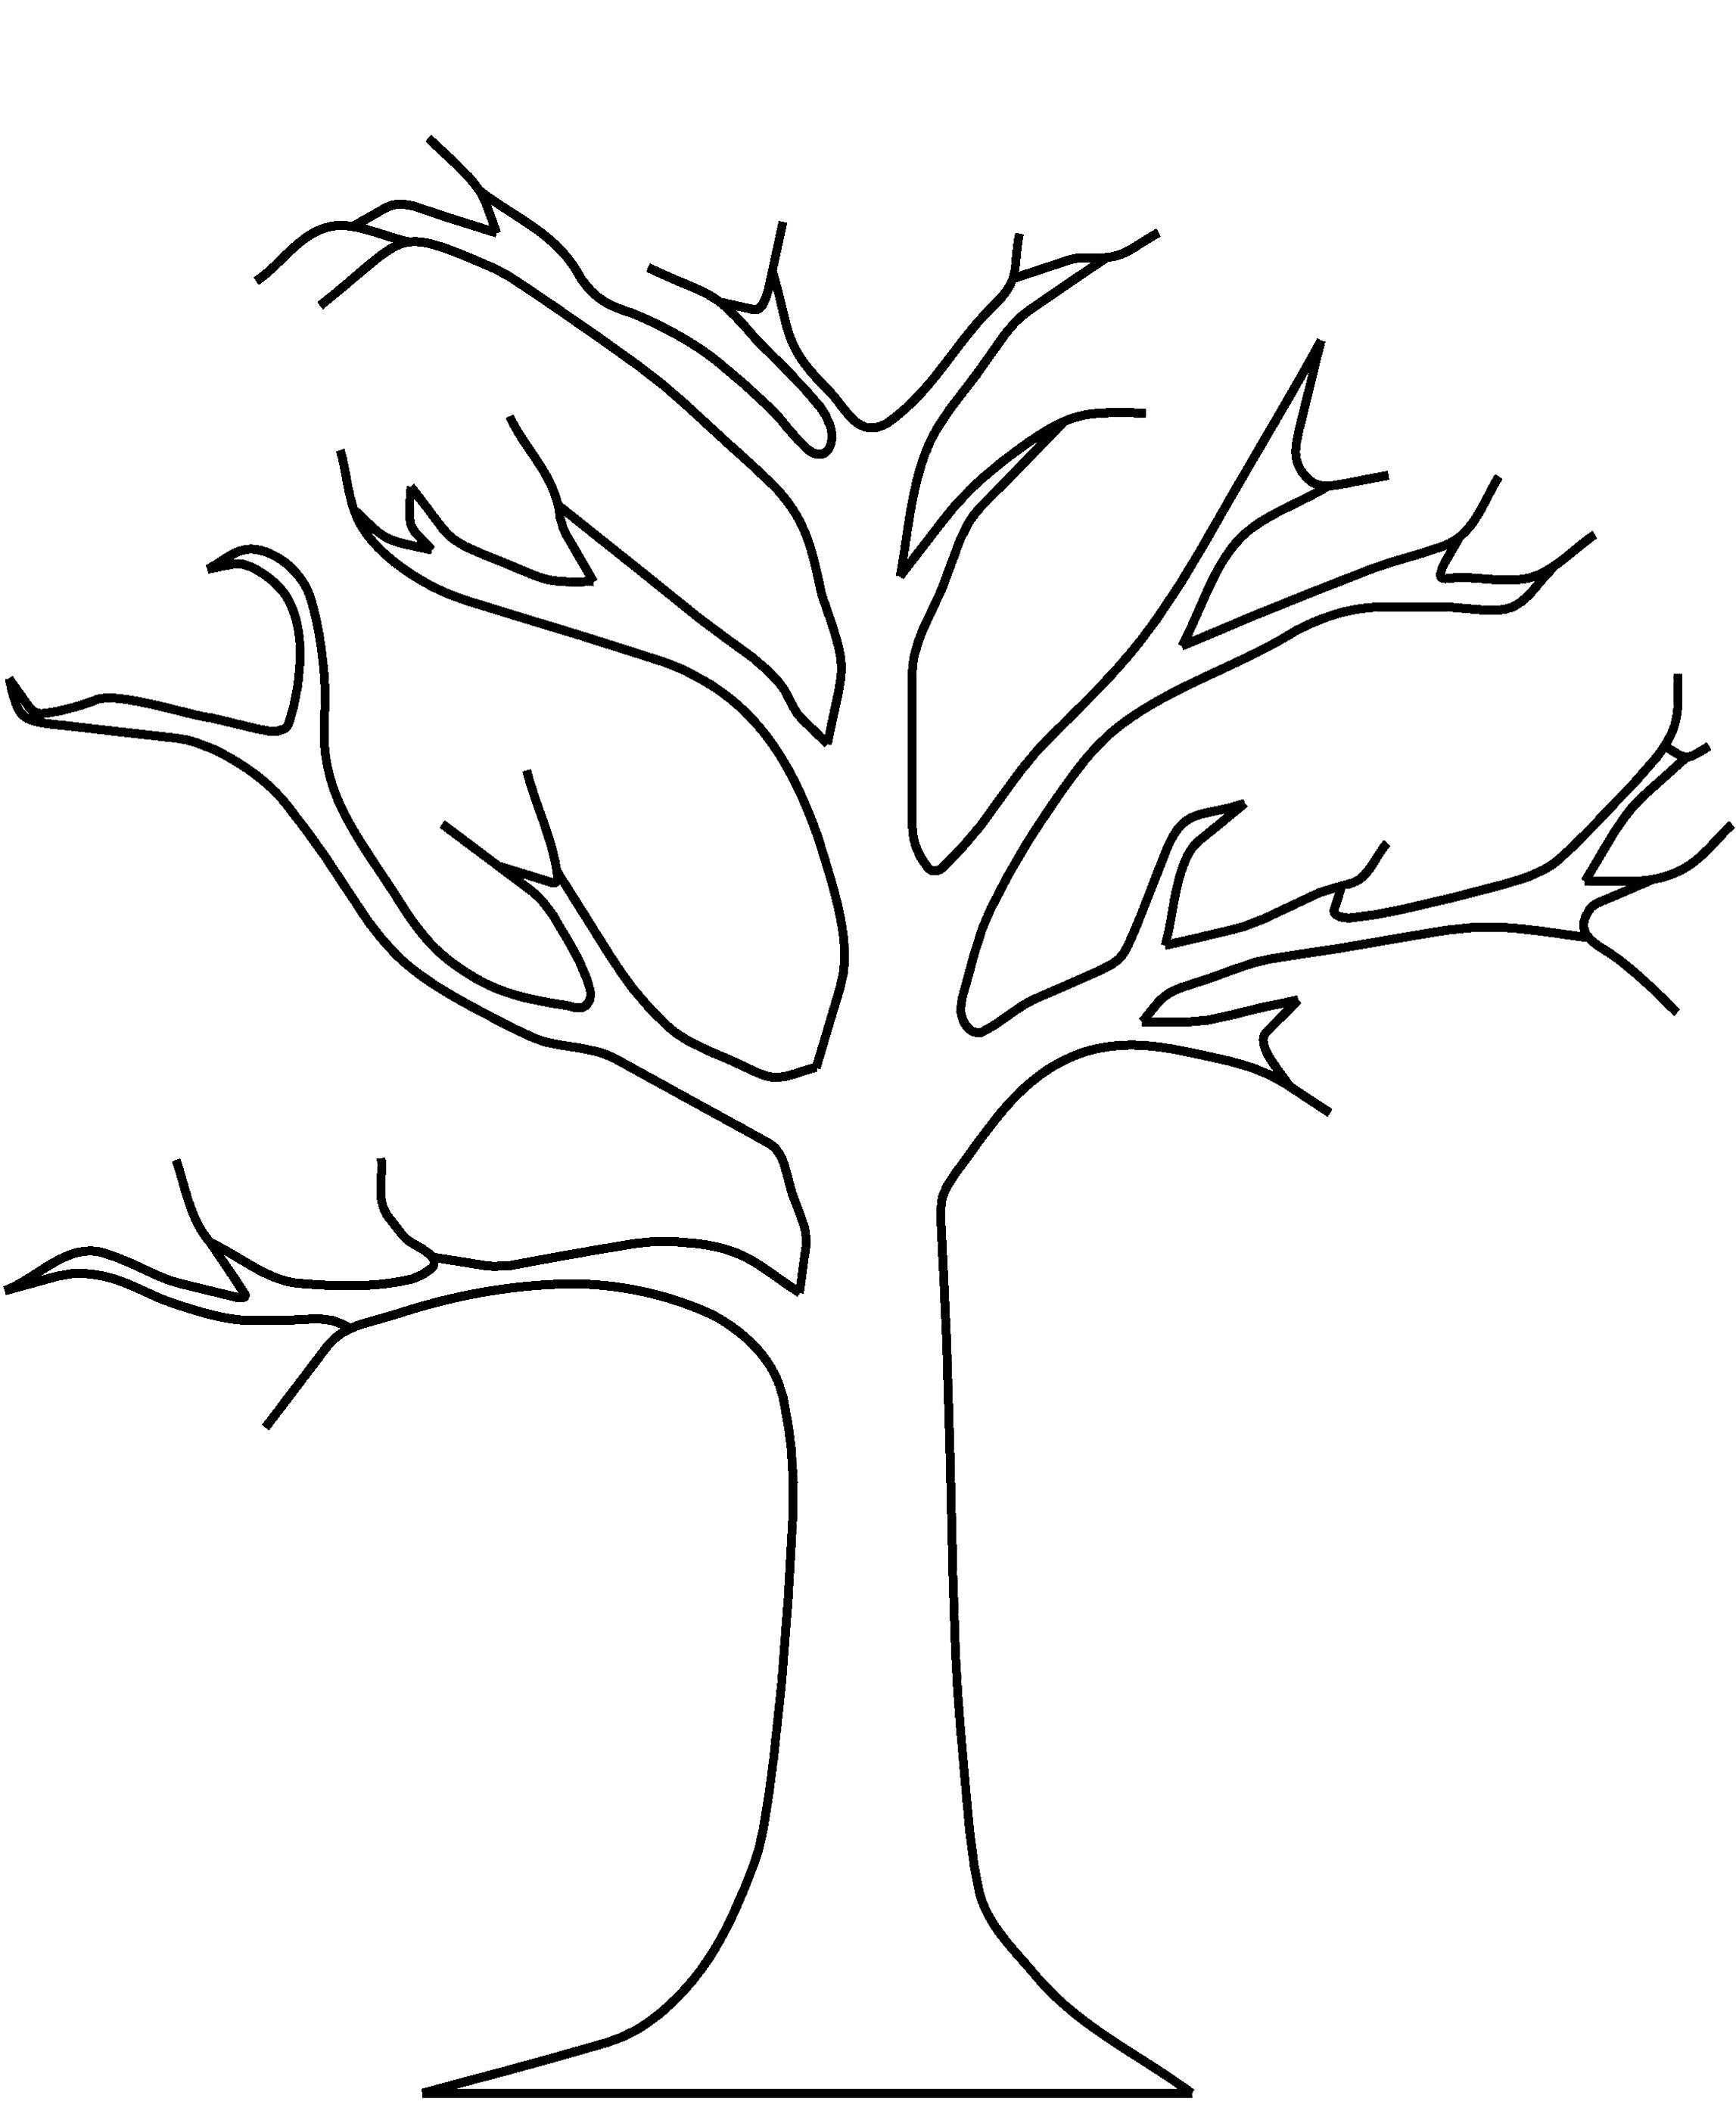 Malvorlage Baum Kostenlos 01 Art Simple Drawings Baum Vorlage Blattschablone Malvorlagen